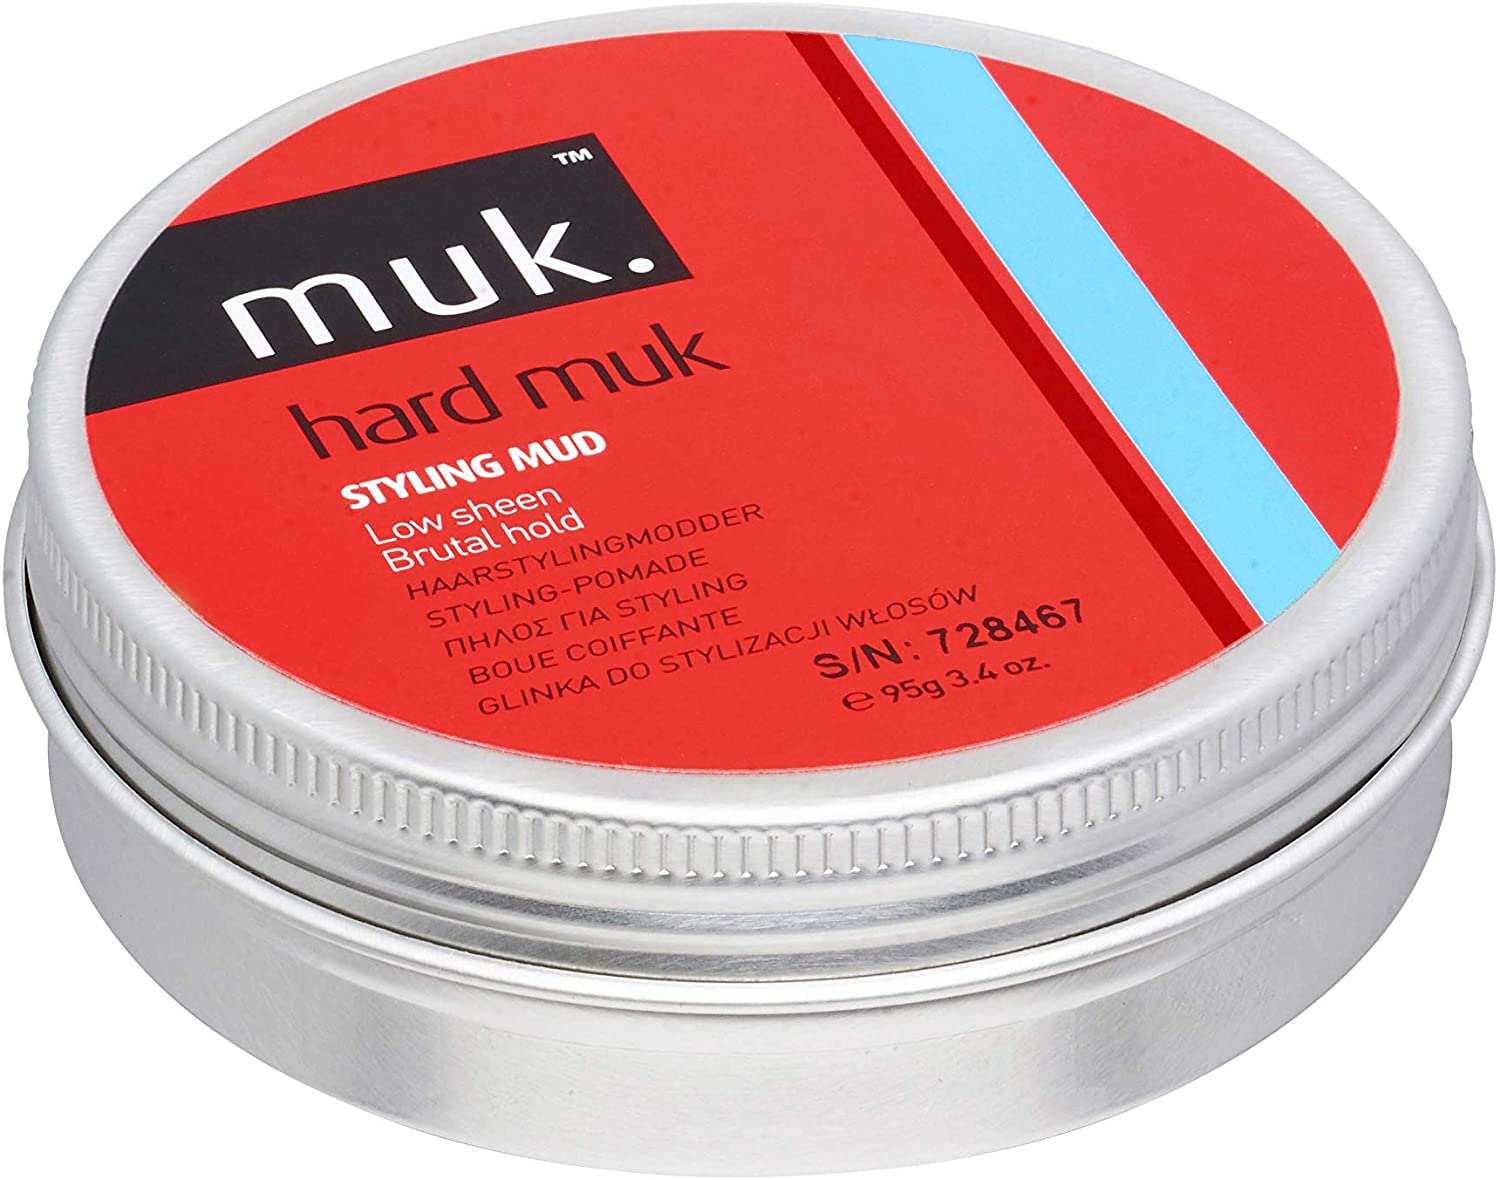 MUK Hard Styling Mud (95g)